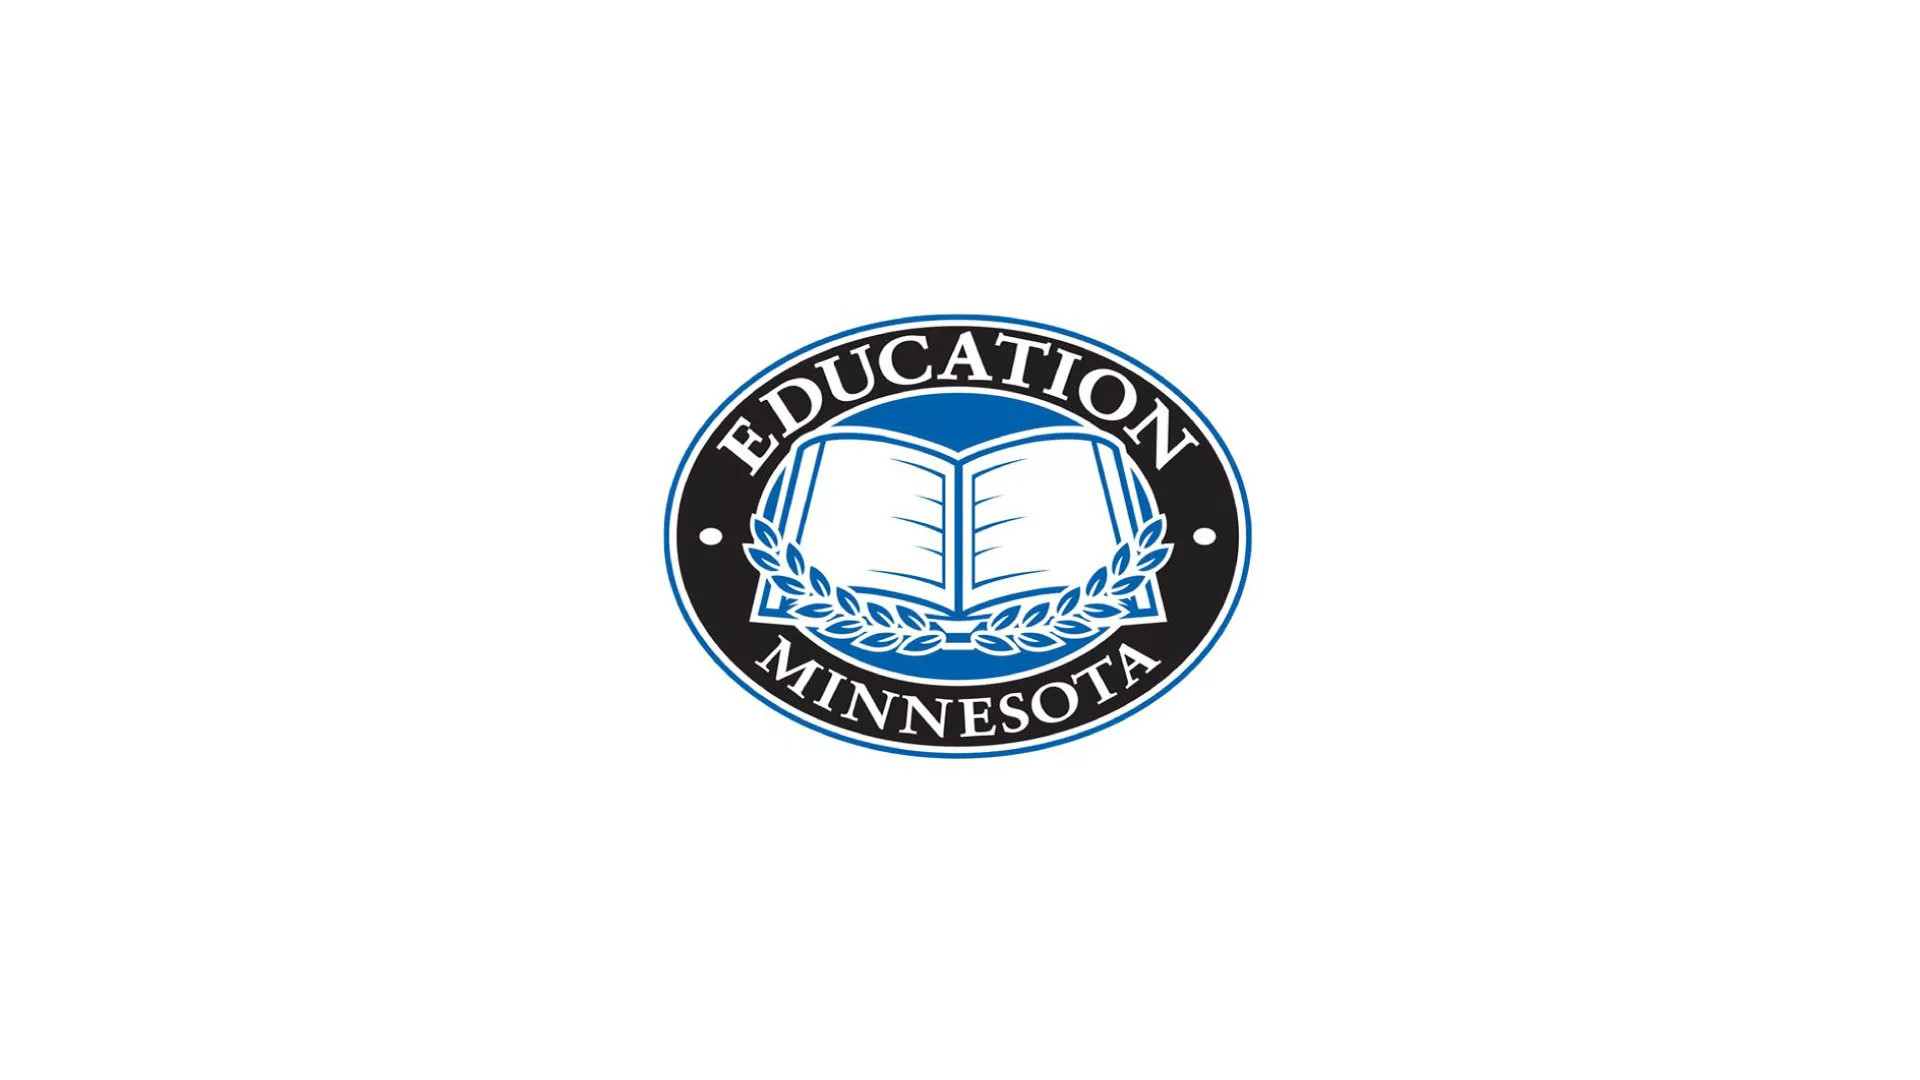 Education Minnesota